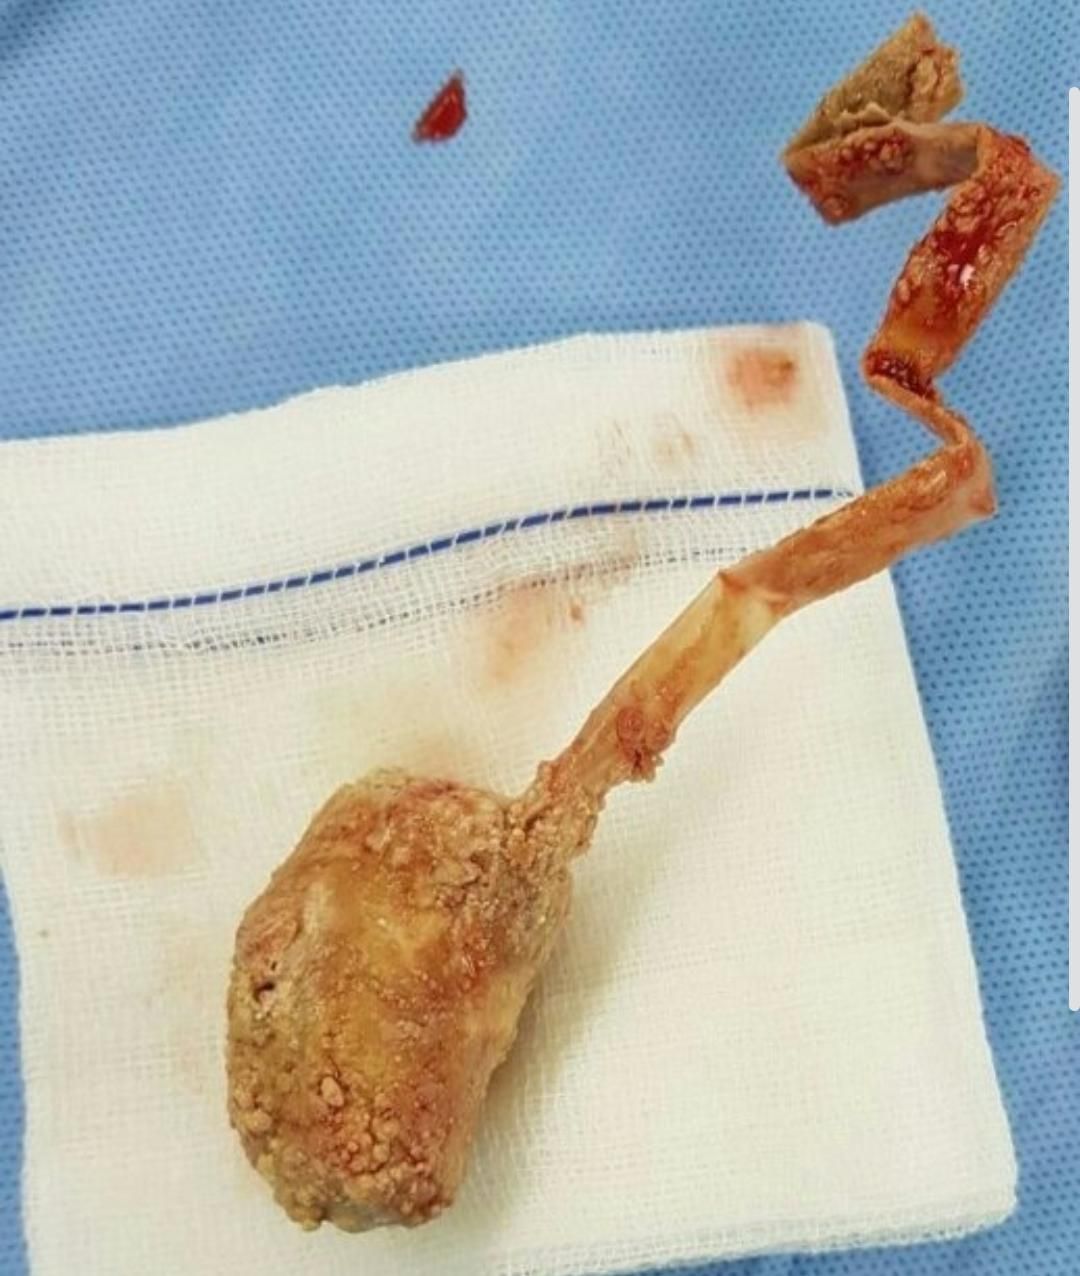 Seorang dokter menemukan sebuah potongan sedotan dari hasil operasi seorang pasien di dalam kandung kemih, peristiwa terjadi di Aceh.